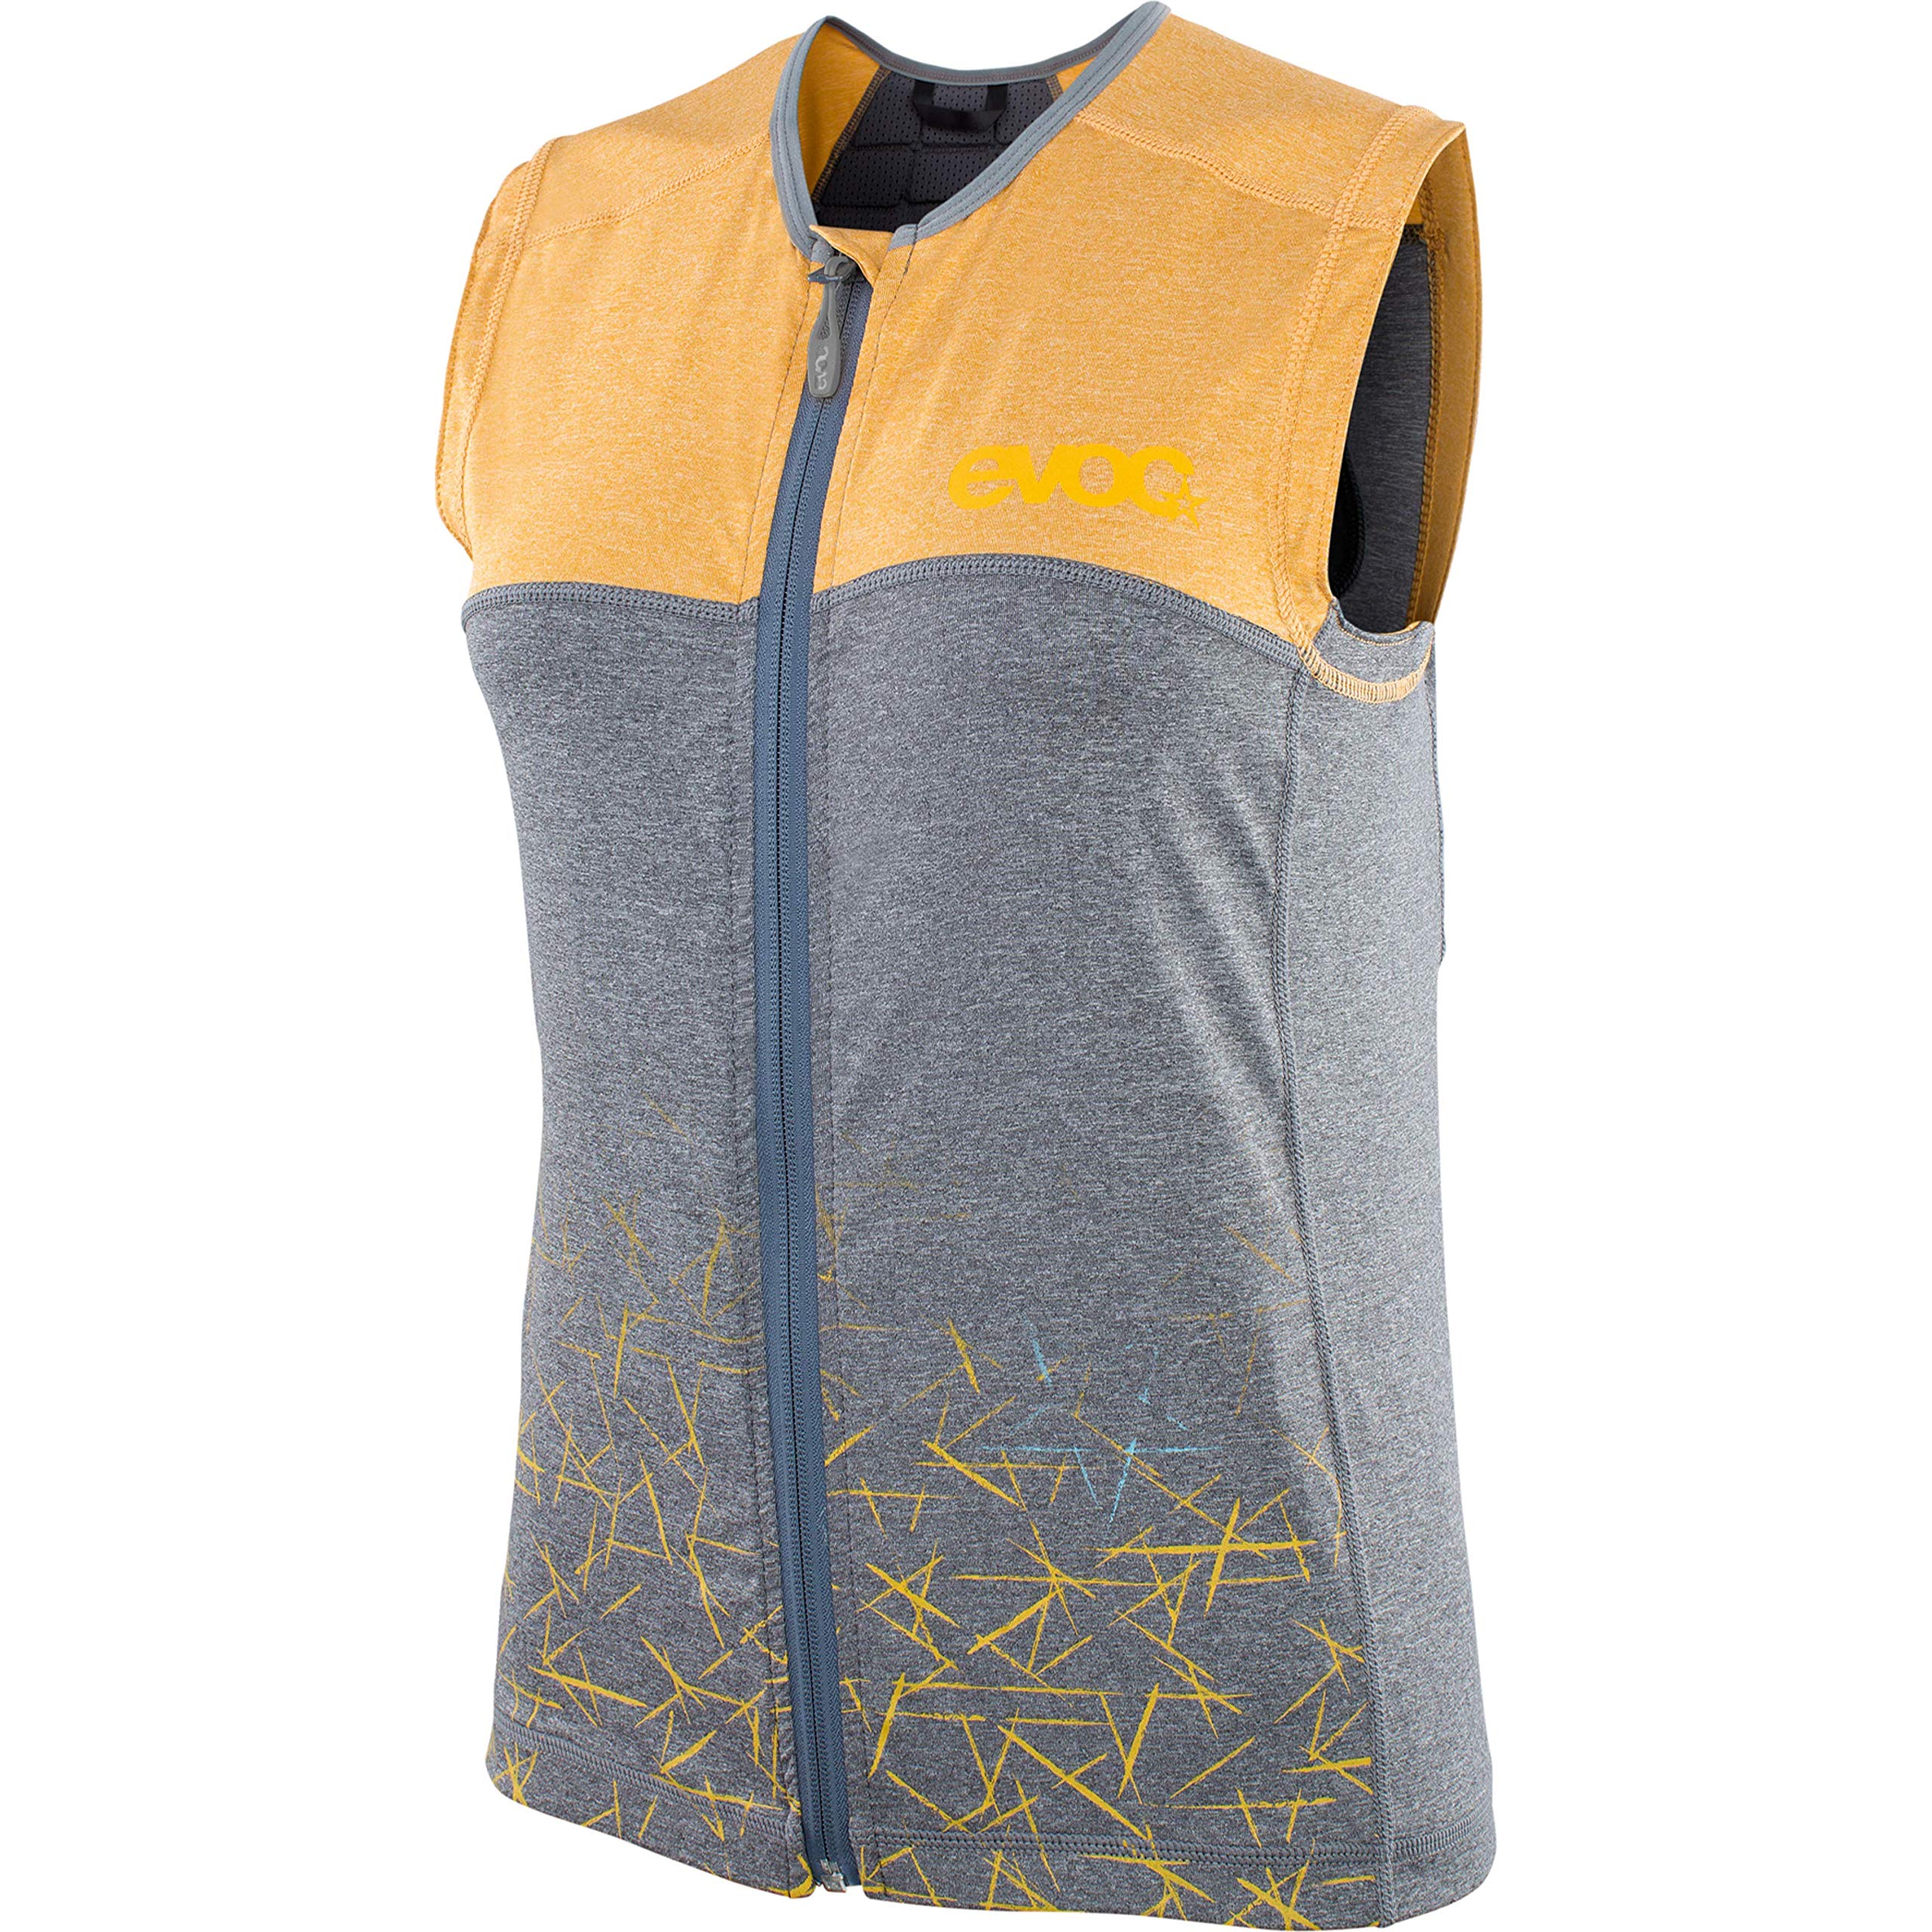 EVOC Damen Protect Protector Vest, Lehm Gelb/Carbon Grau, M